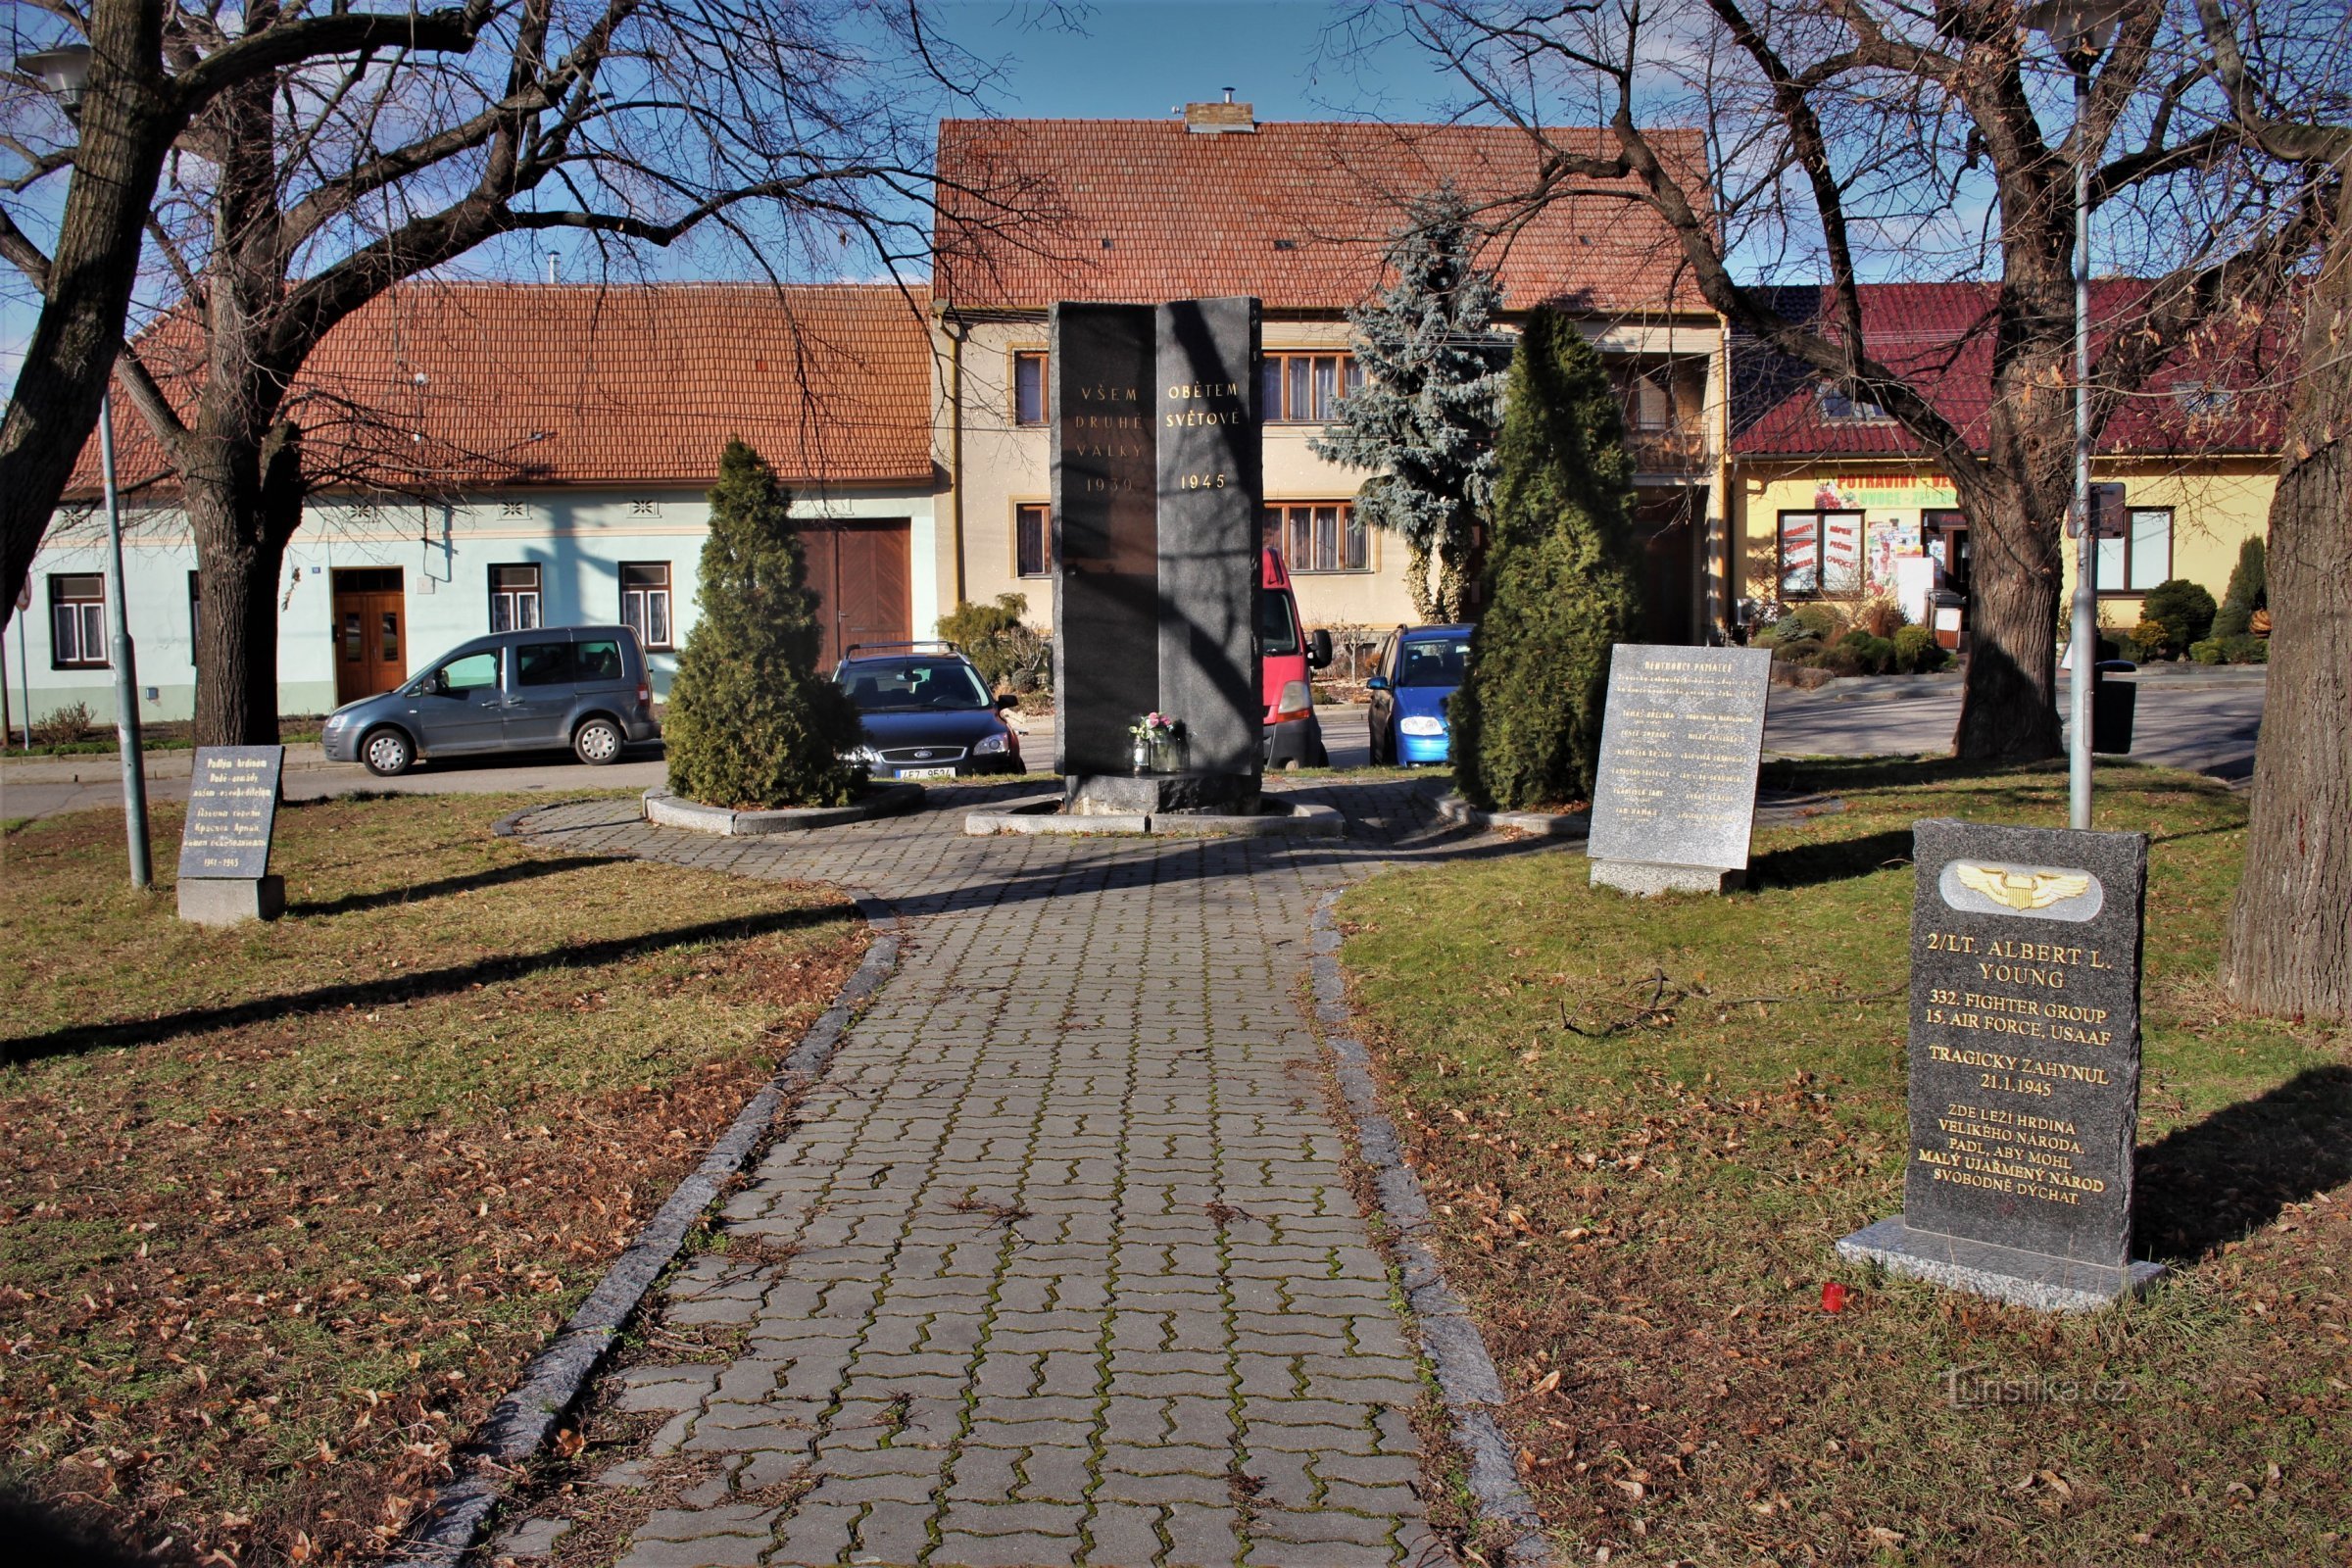 El monumento es parte de un lugar de culto en Náměstí Svobody en el centro del pueblo.